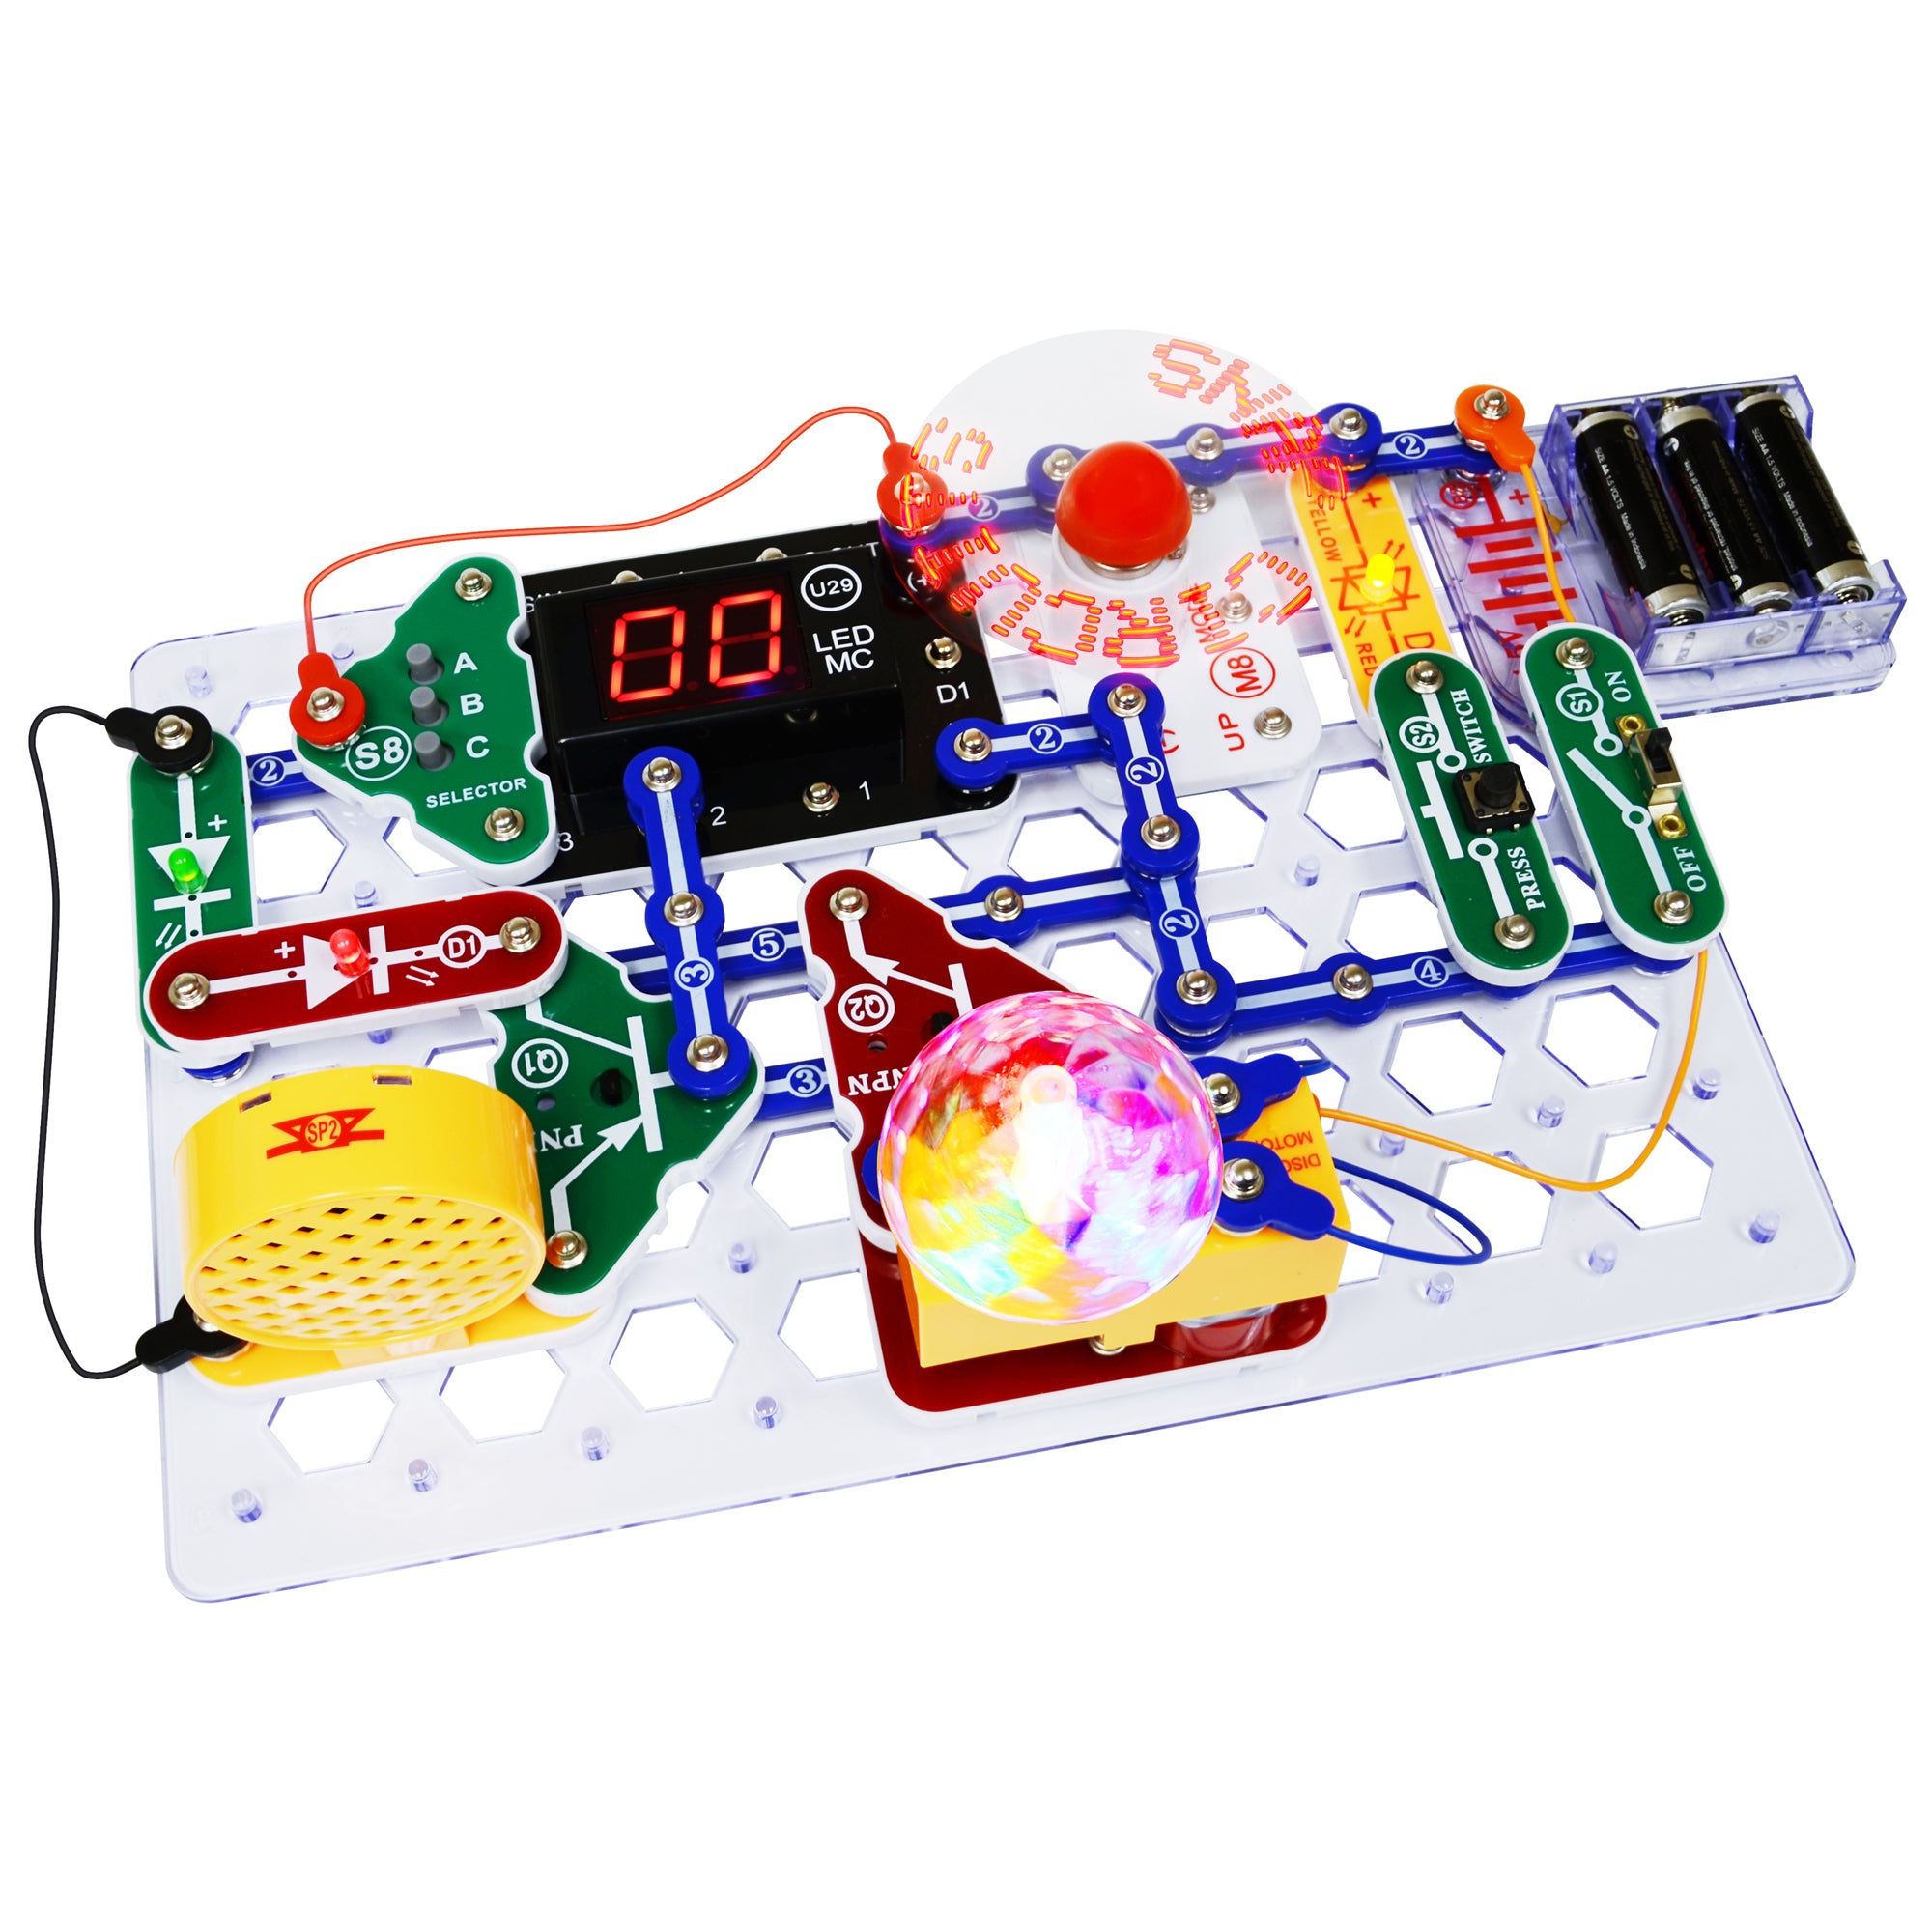 snap circuits arcade electronics exploration kit